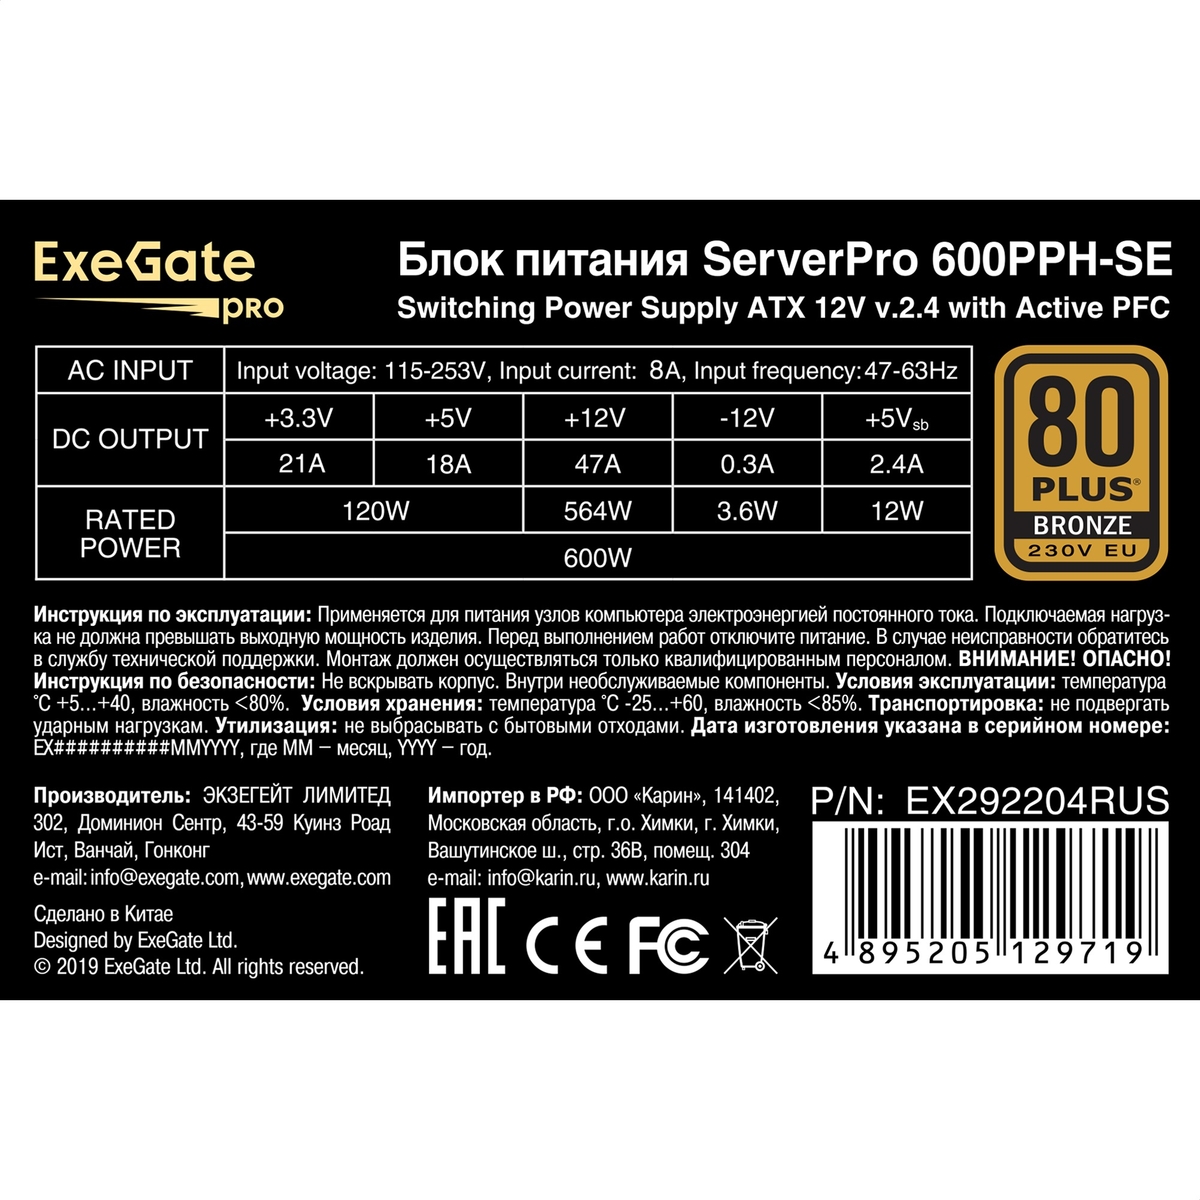   600W ExeGate ServerPRO 80 PLUS<sup></sup> Bronze 600PPH-SE